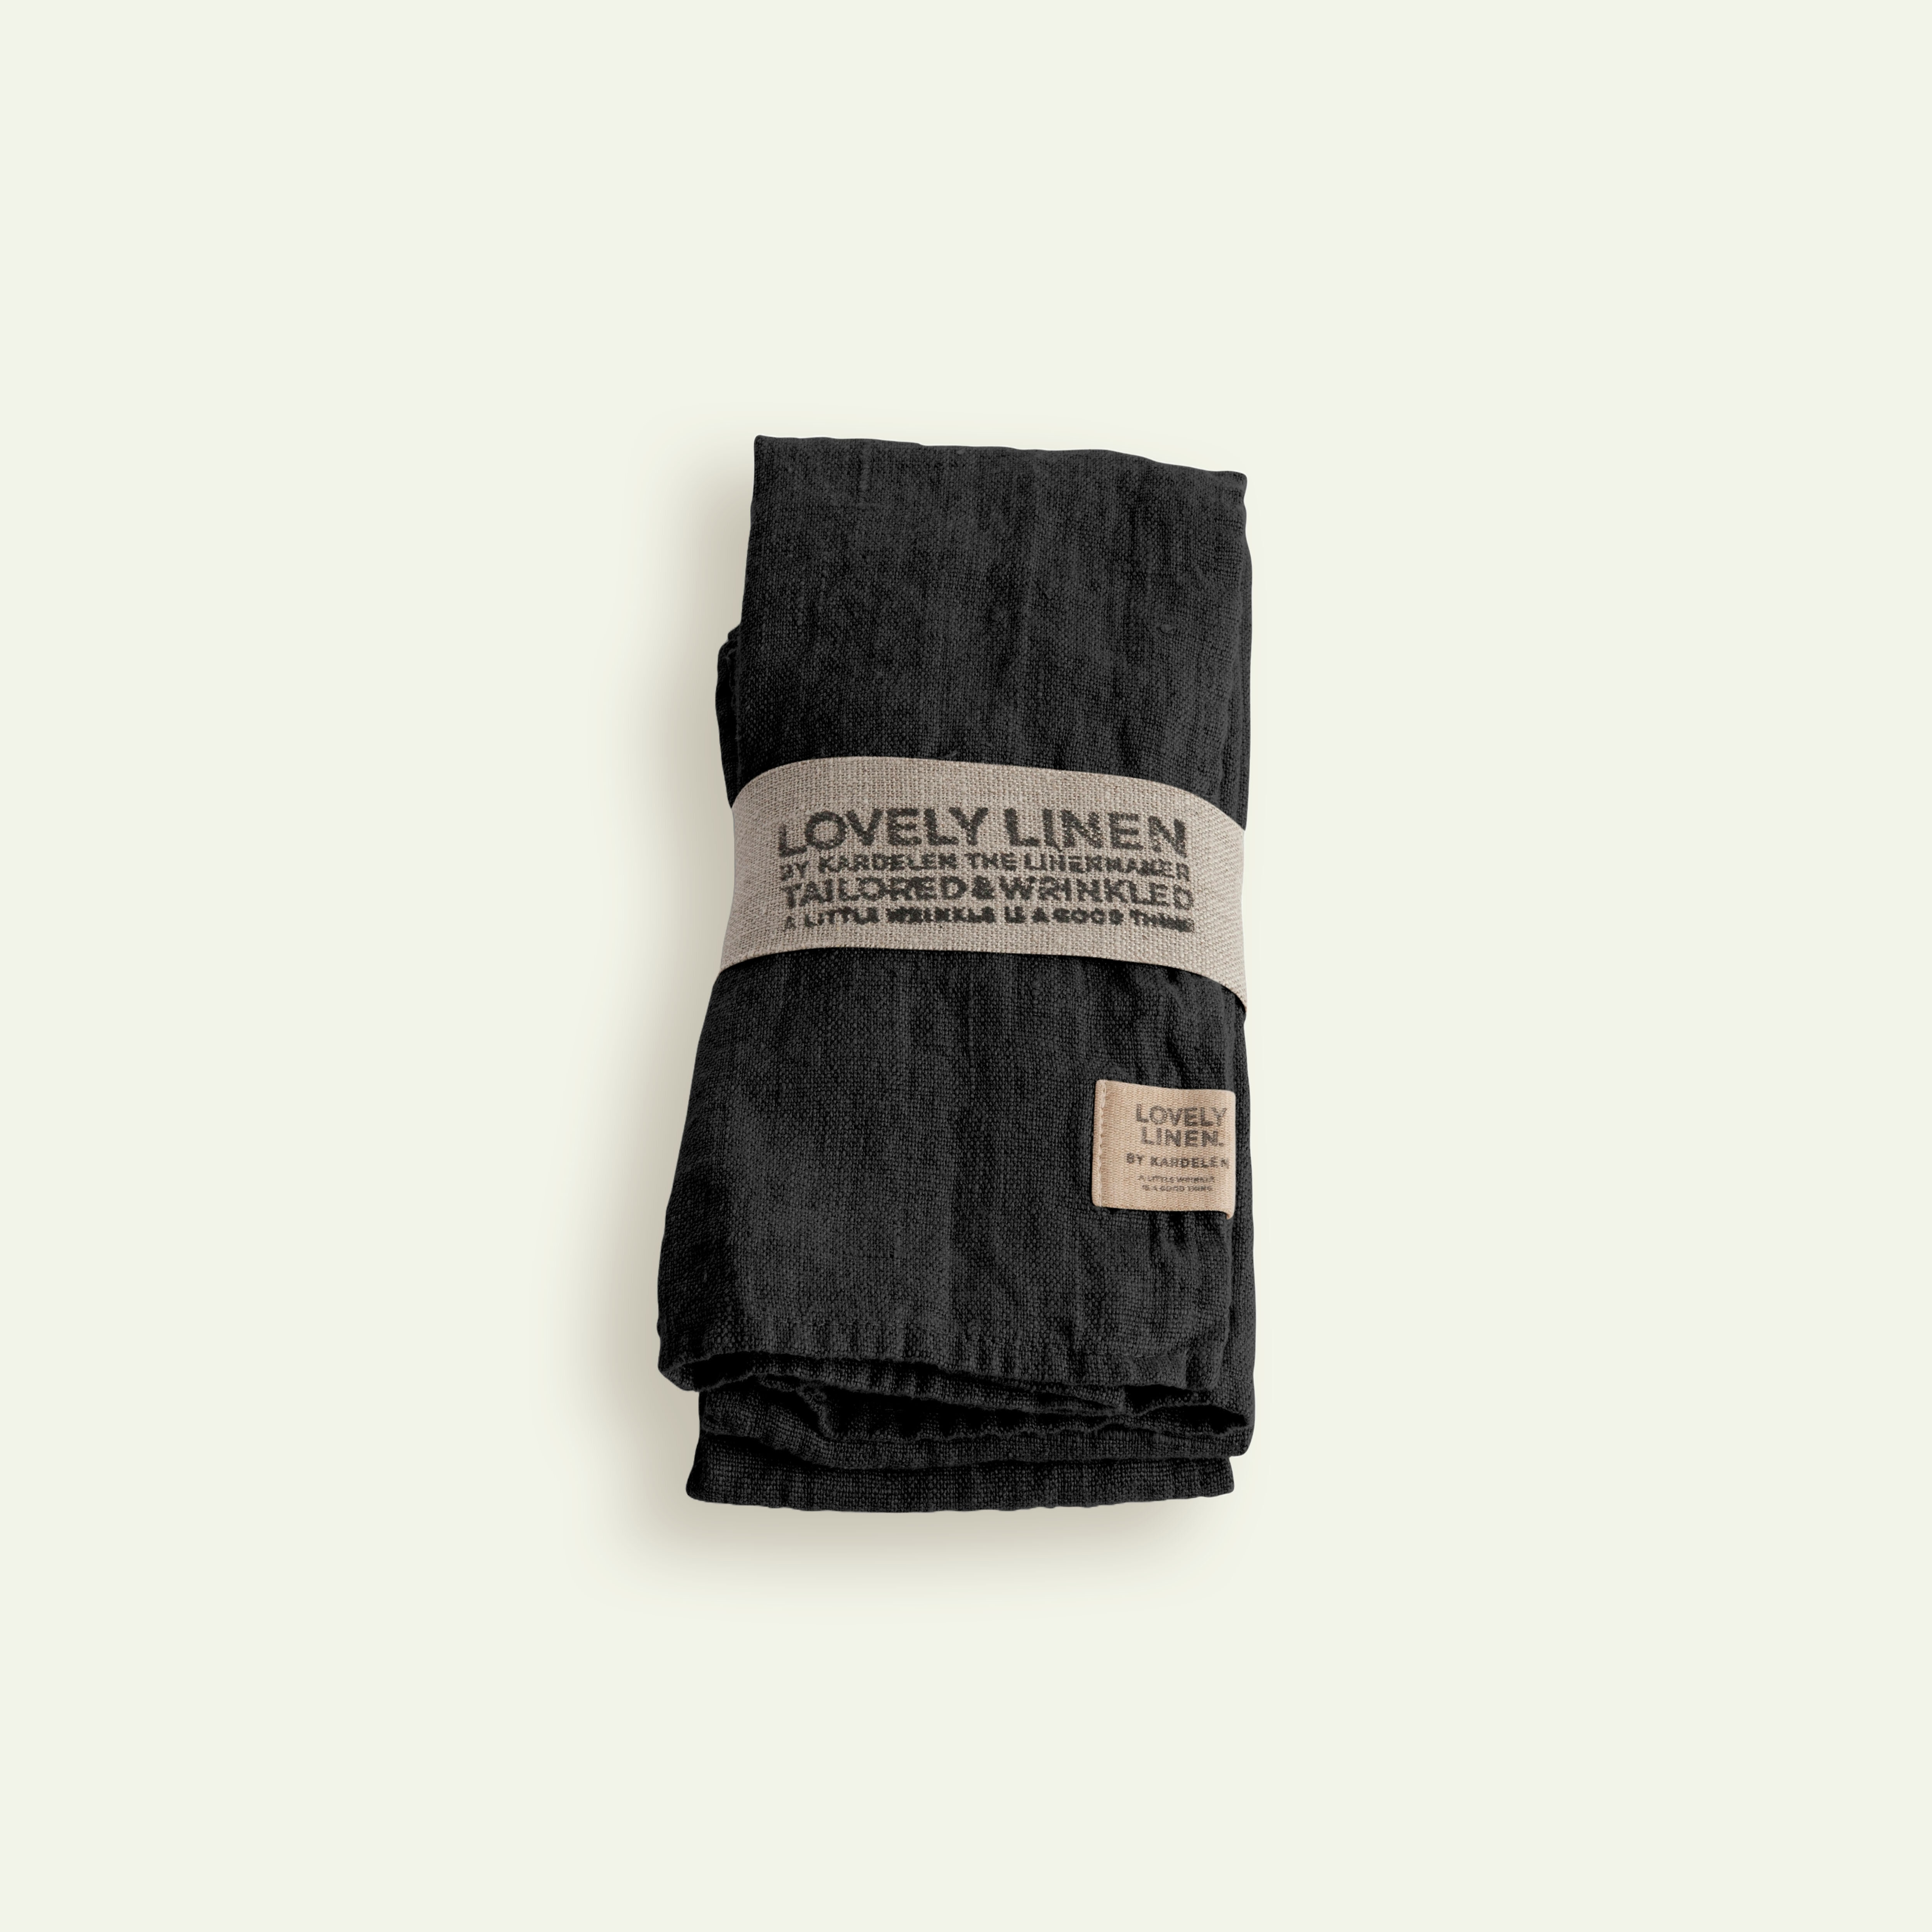 Lovely Linen Lovely serviet 45 x 45 cm 4-pack, Dark Grey